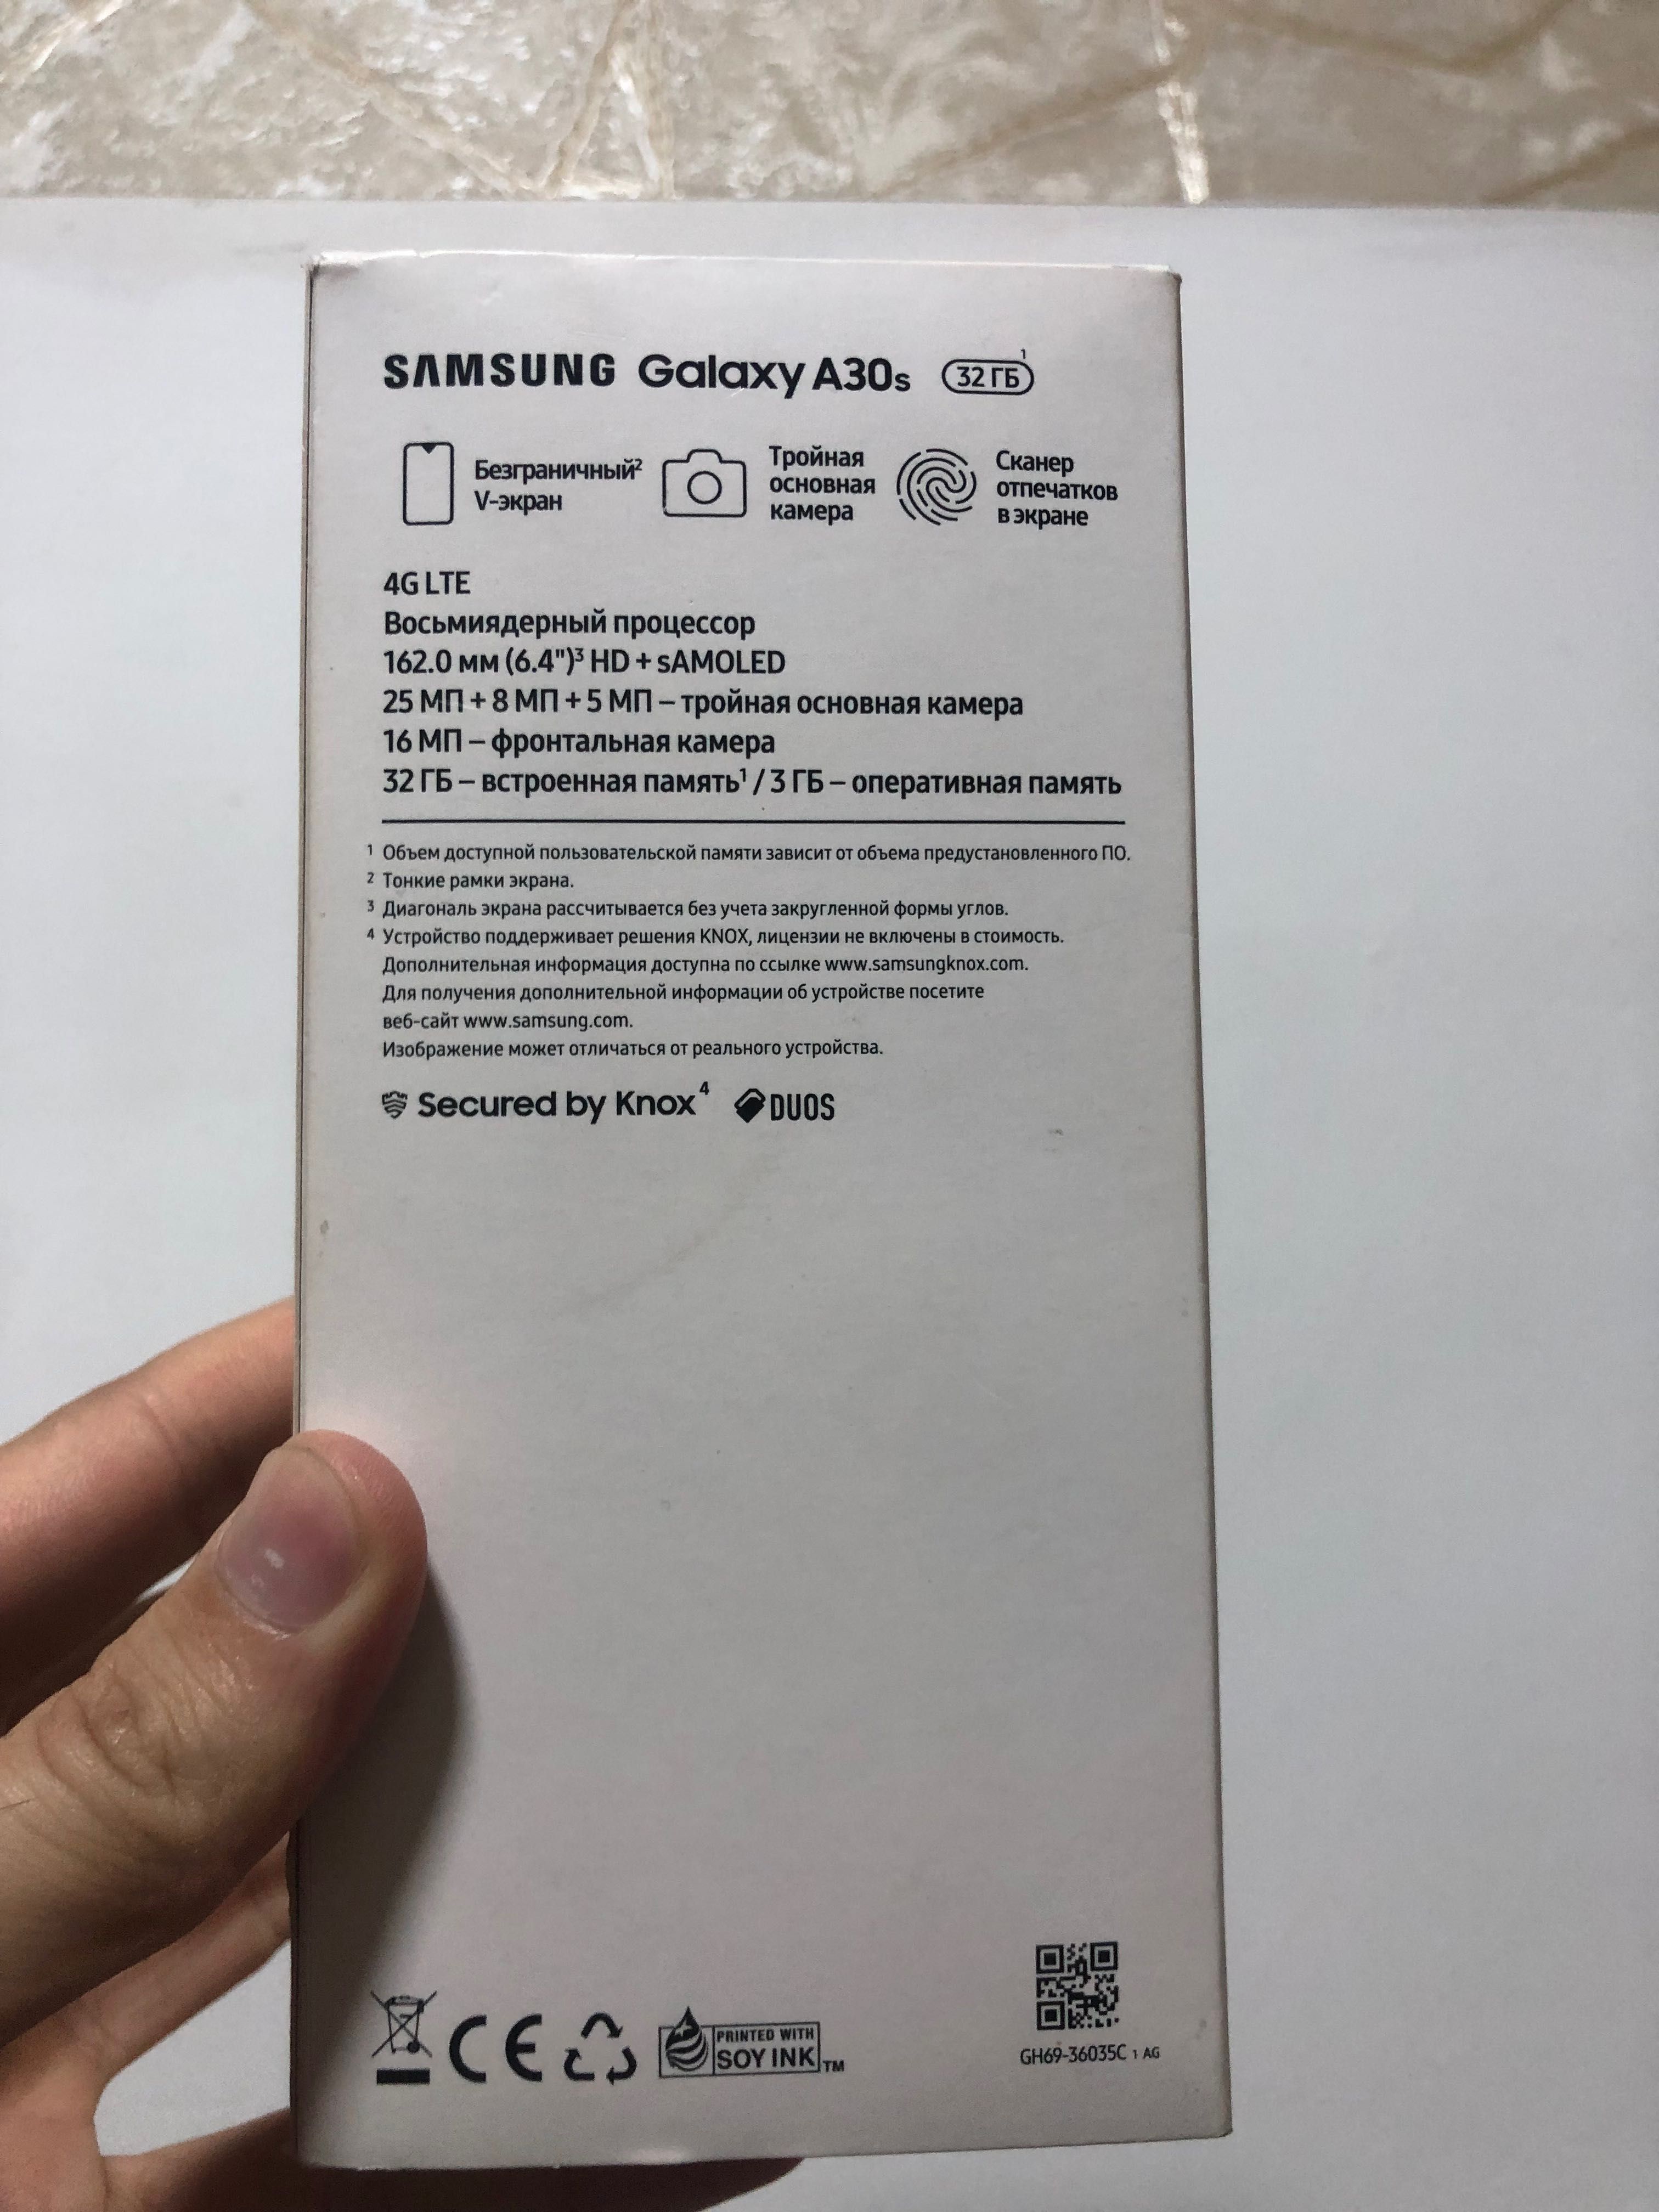 Samsung a30s sastayana ideal